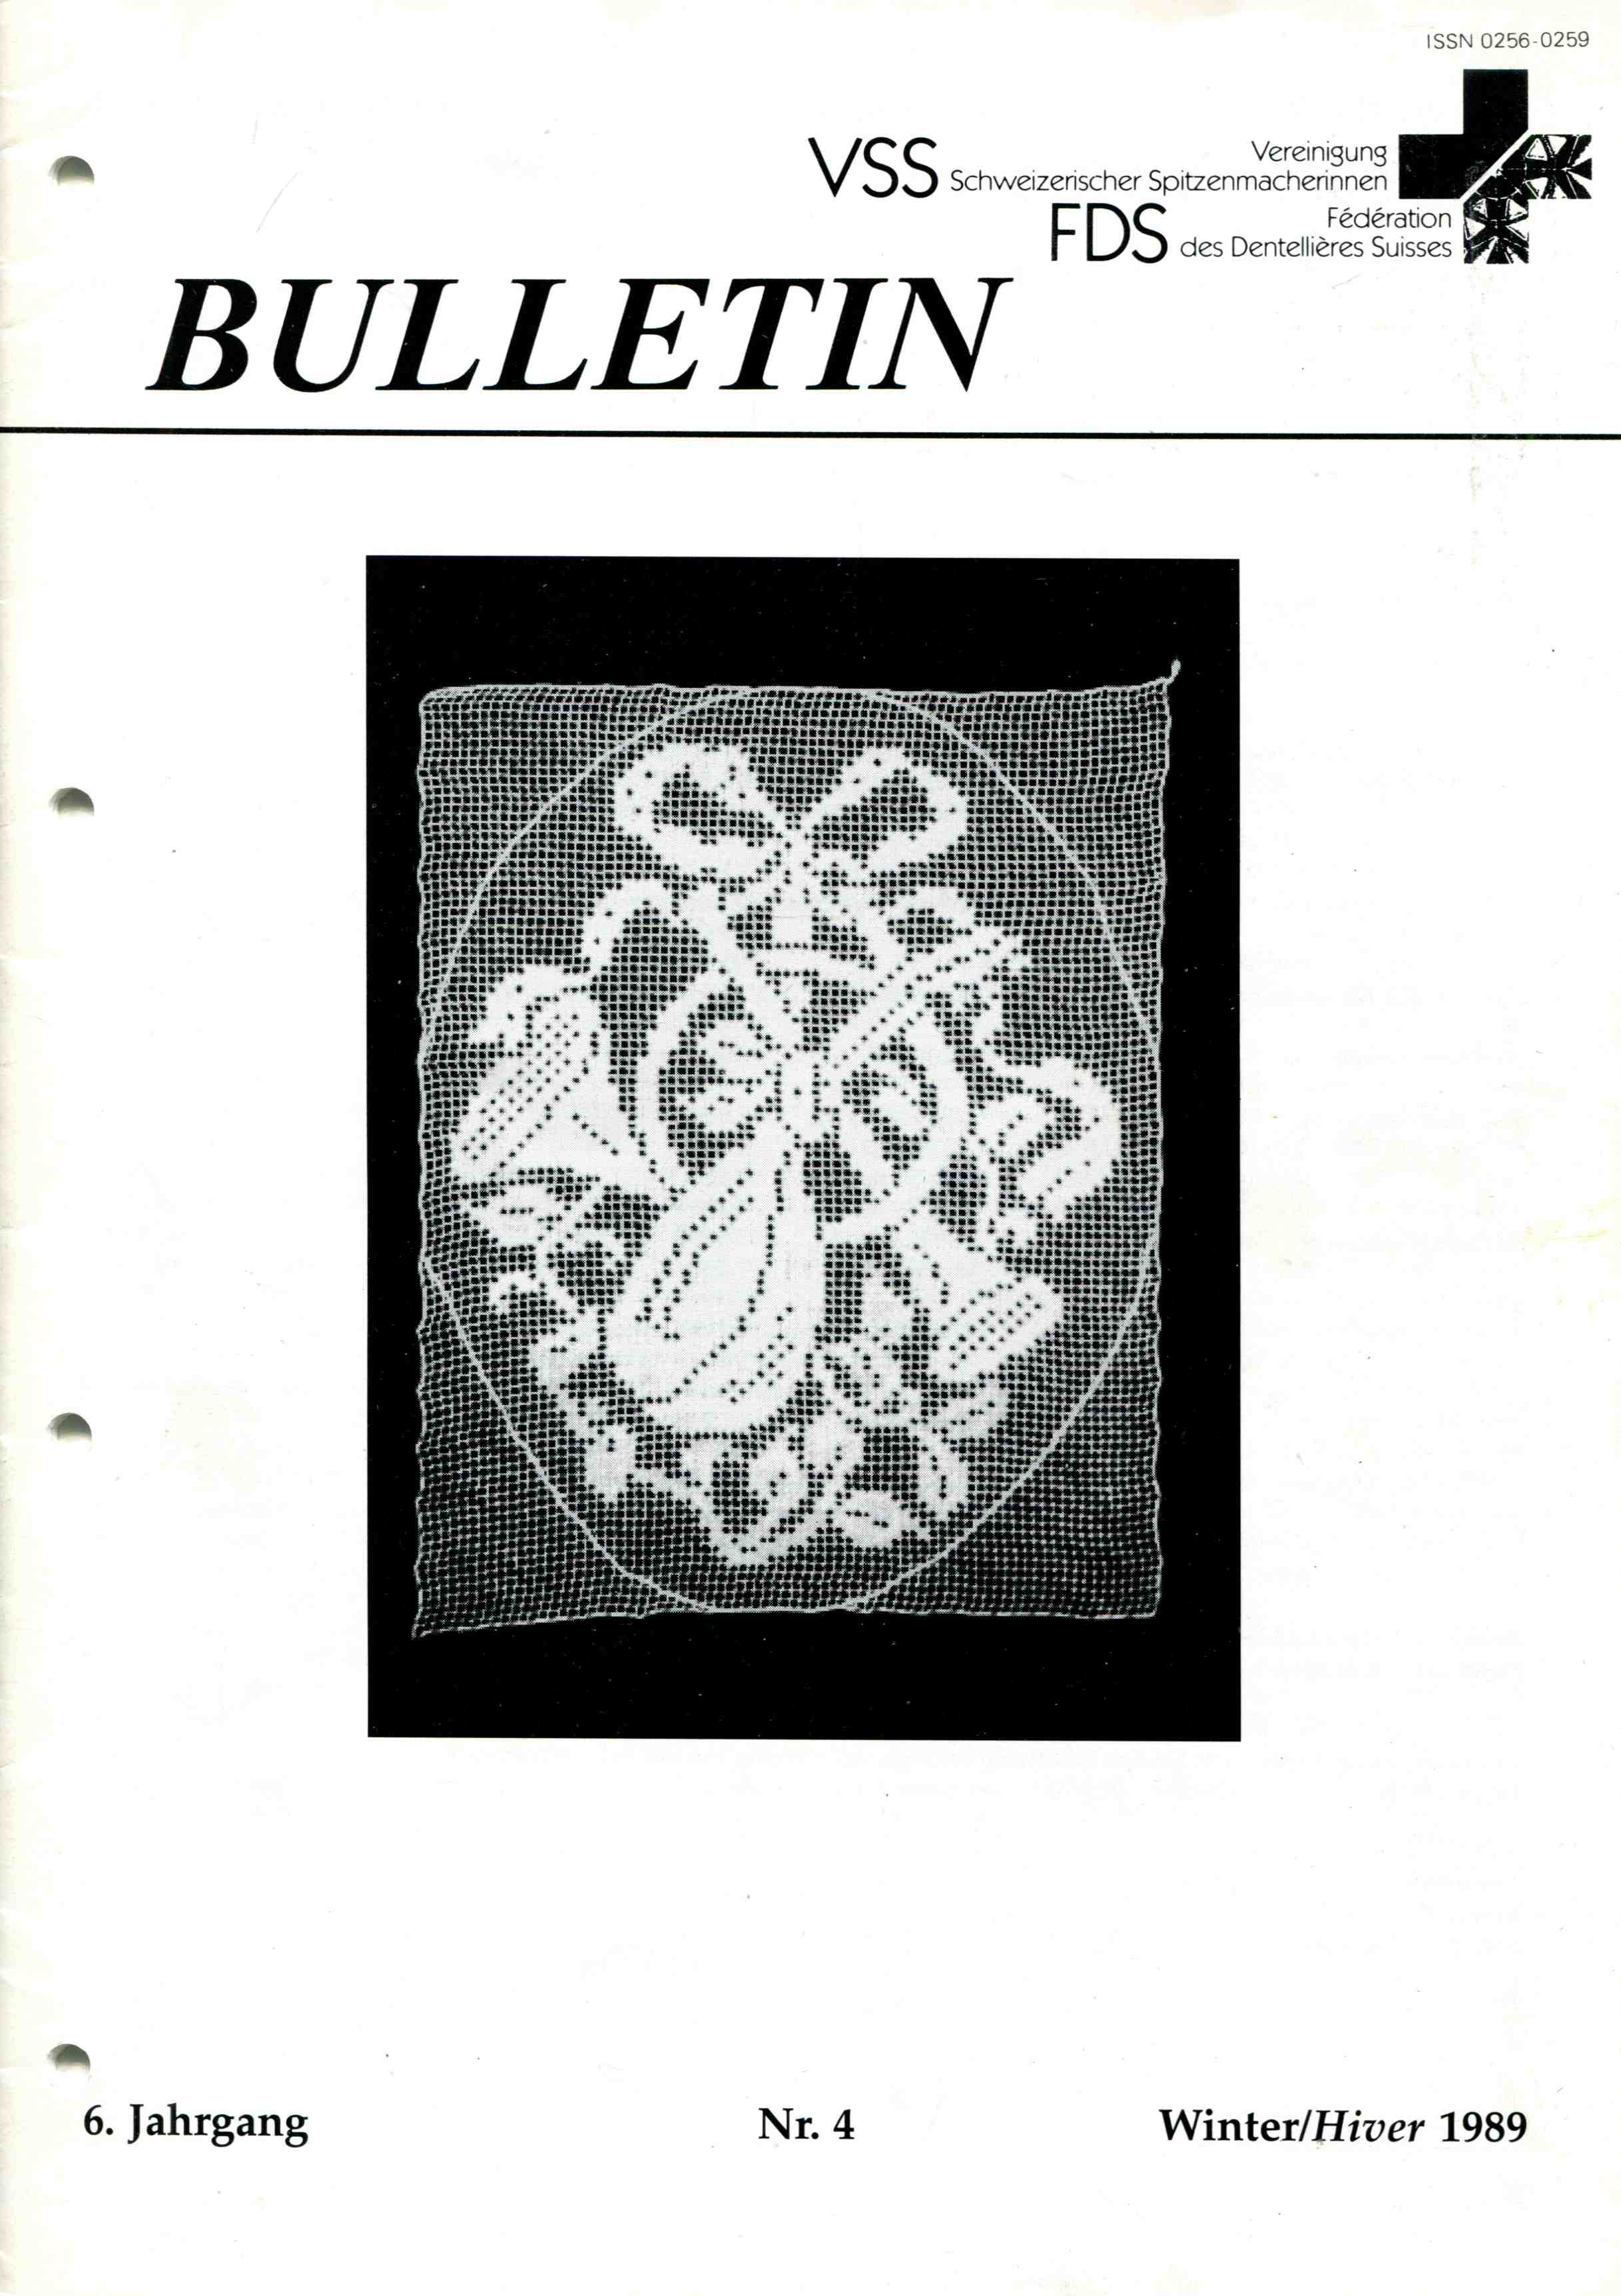 Bulletin VSS 6. Jahrgang Nr.4 Winter 1989